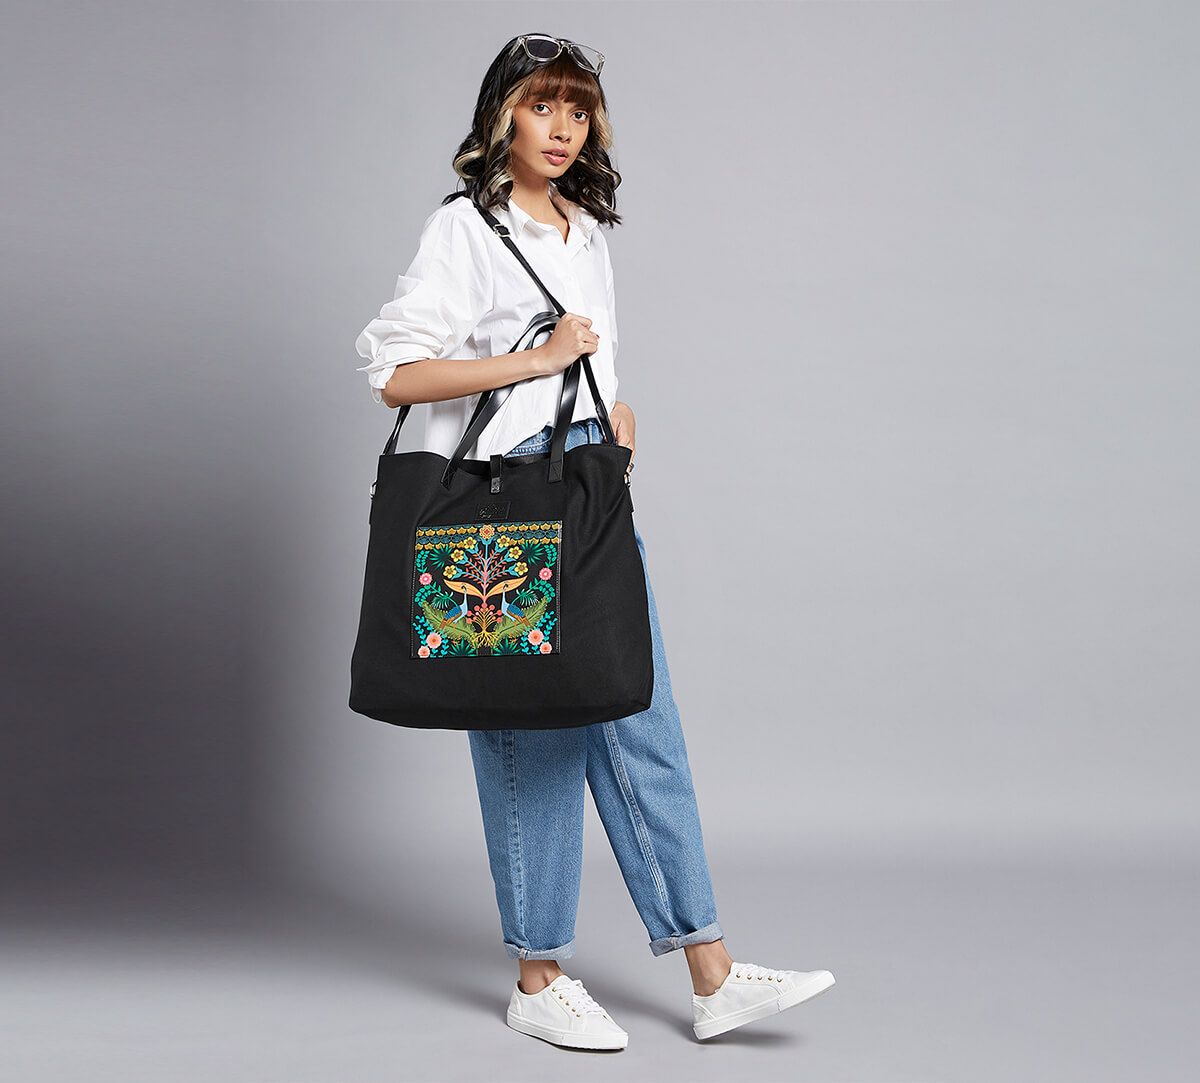 Buy Casual Bags Online  Designer Handbags For Women  India Circus